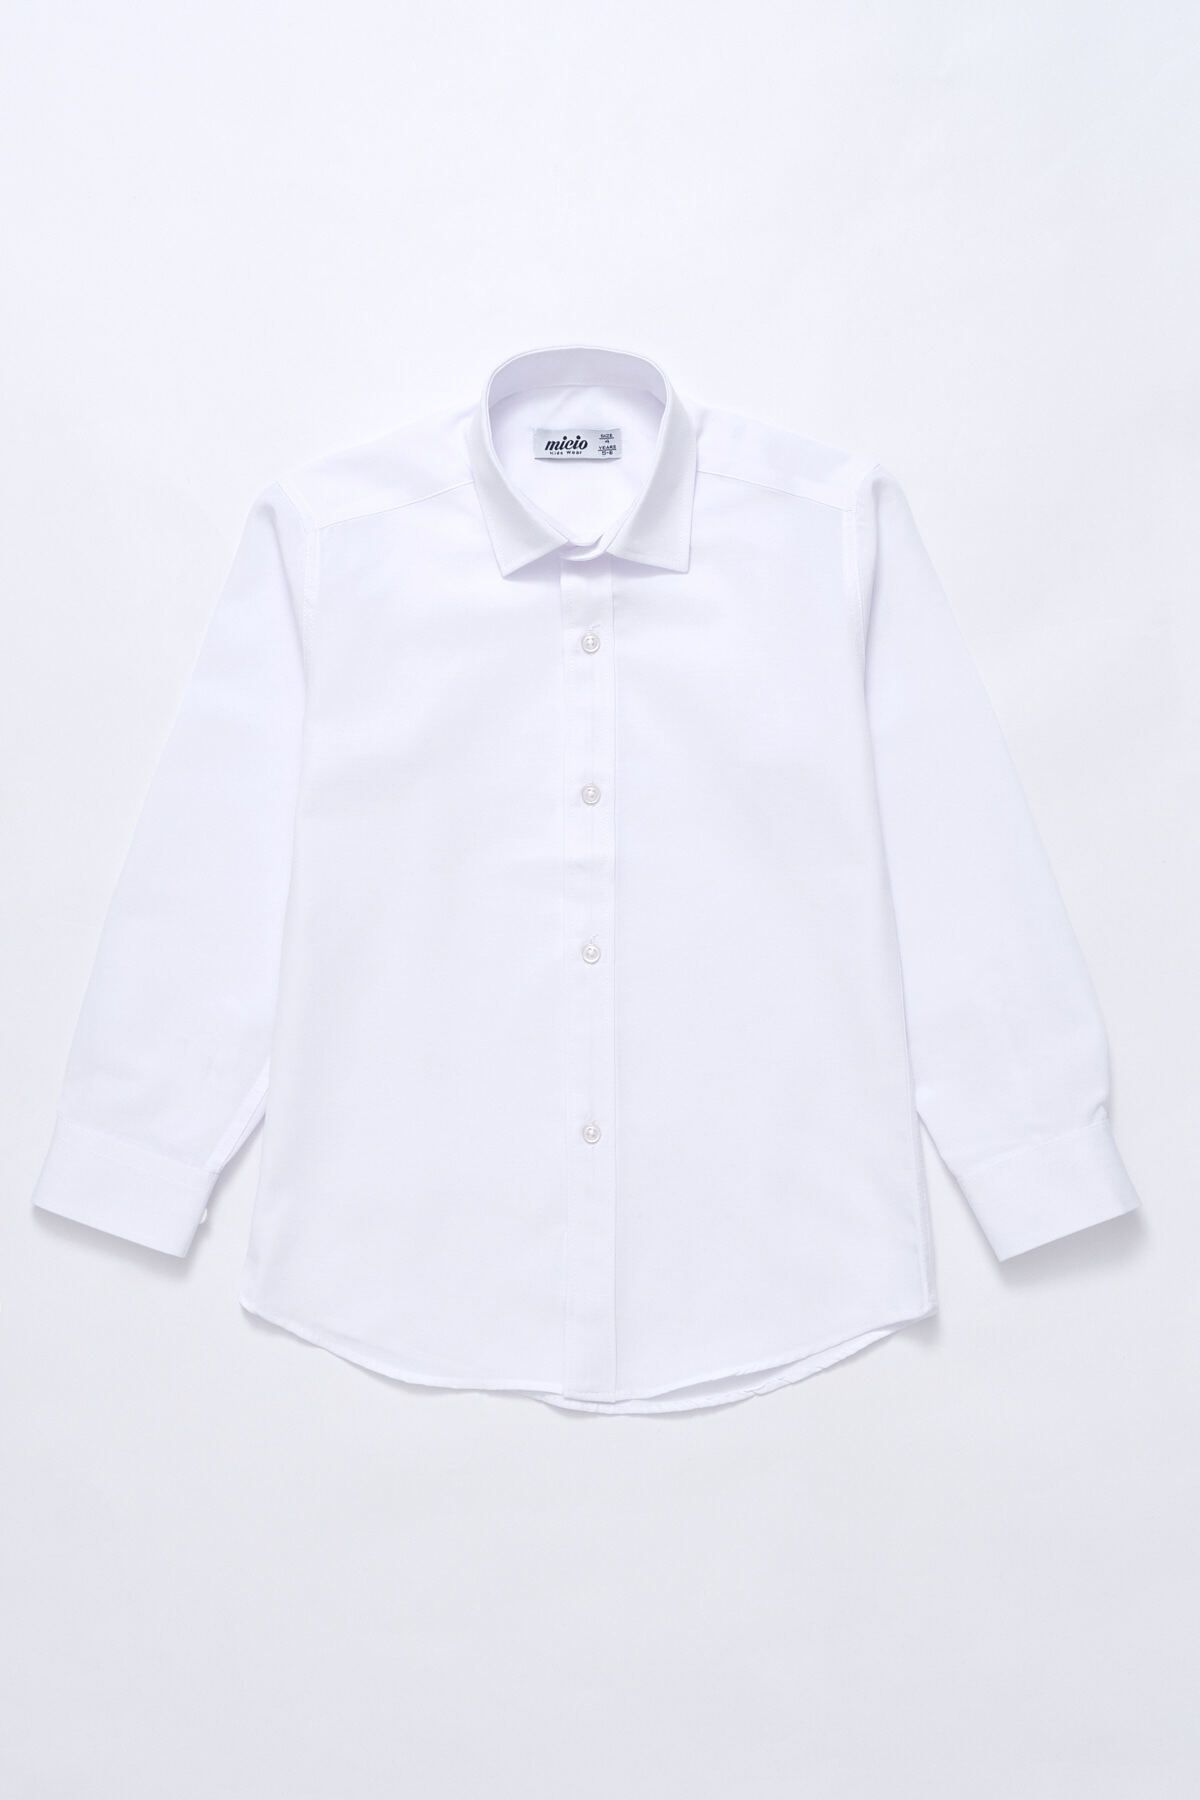 Micio Erkek Çocuk Klasik Beyaz Gömlek